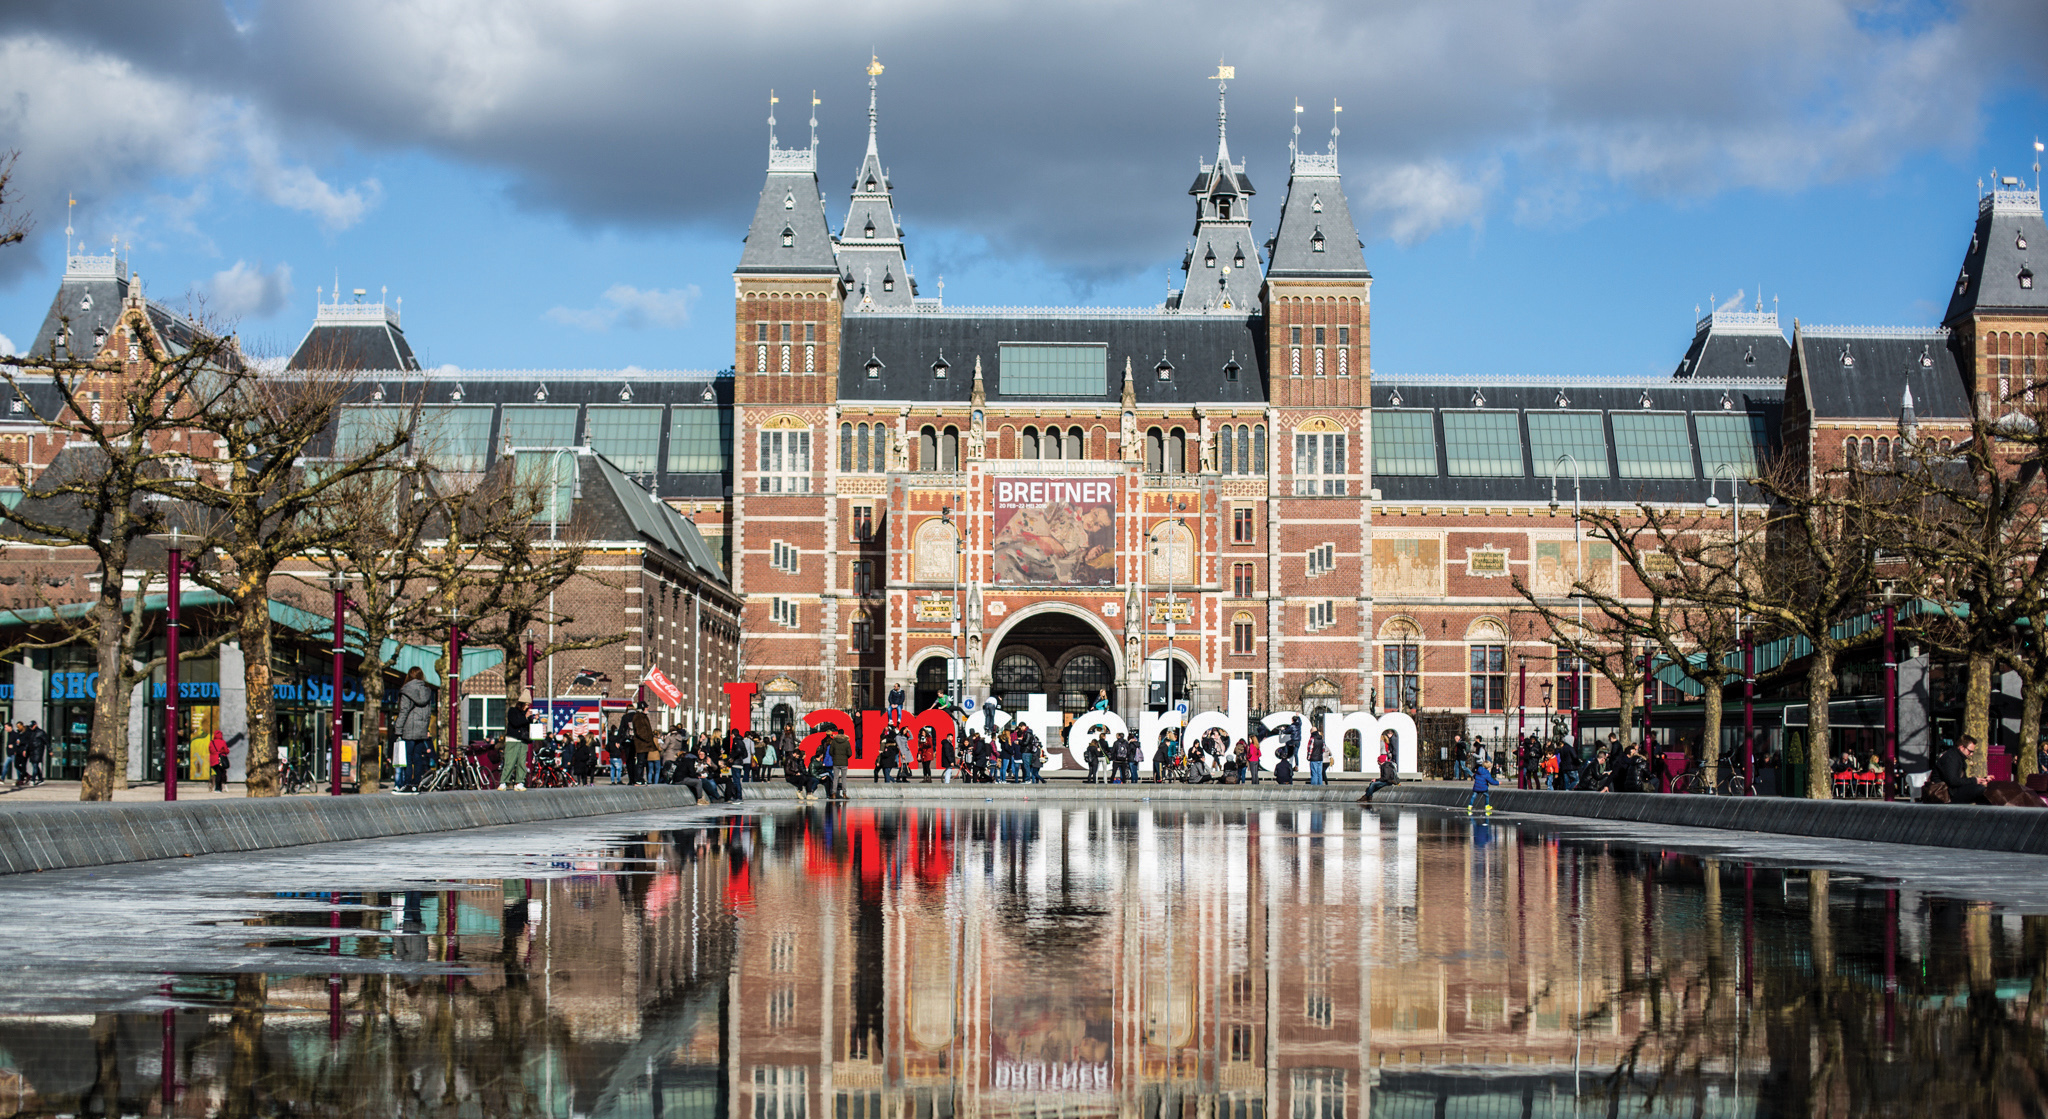 A vibe de Amsterdã atrai viajantes do mundo todo com sua efervescência cultural